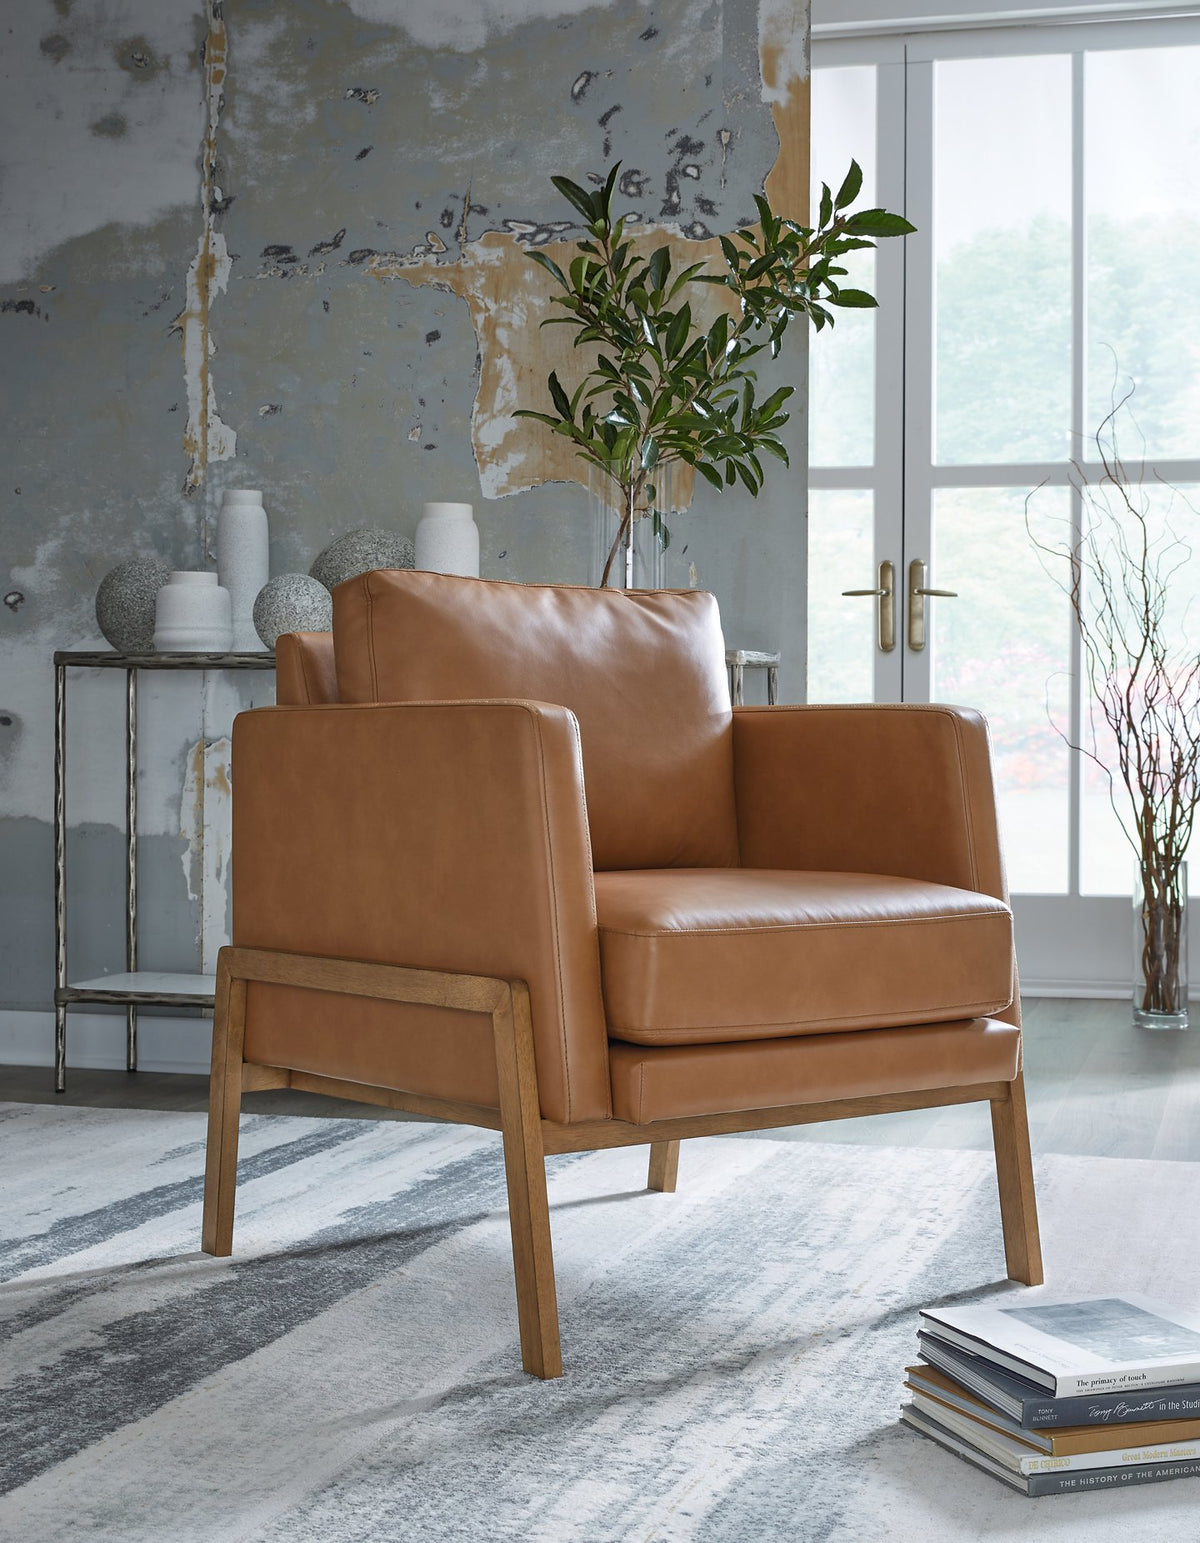 Numund Accent Chair  Half Price Furniture